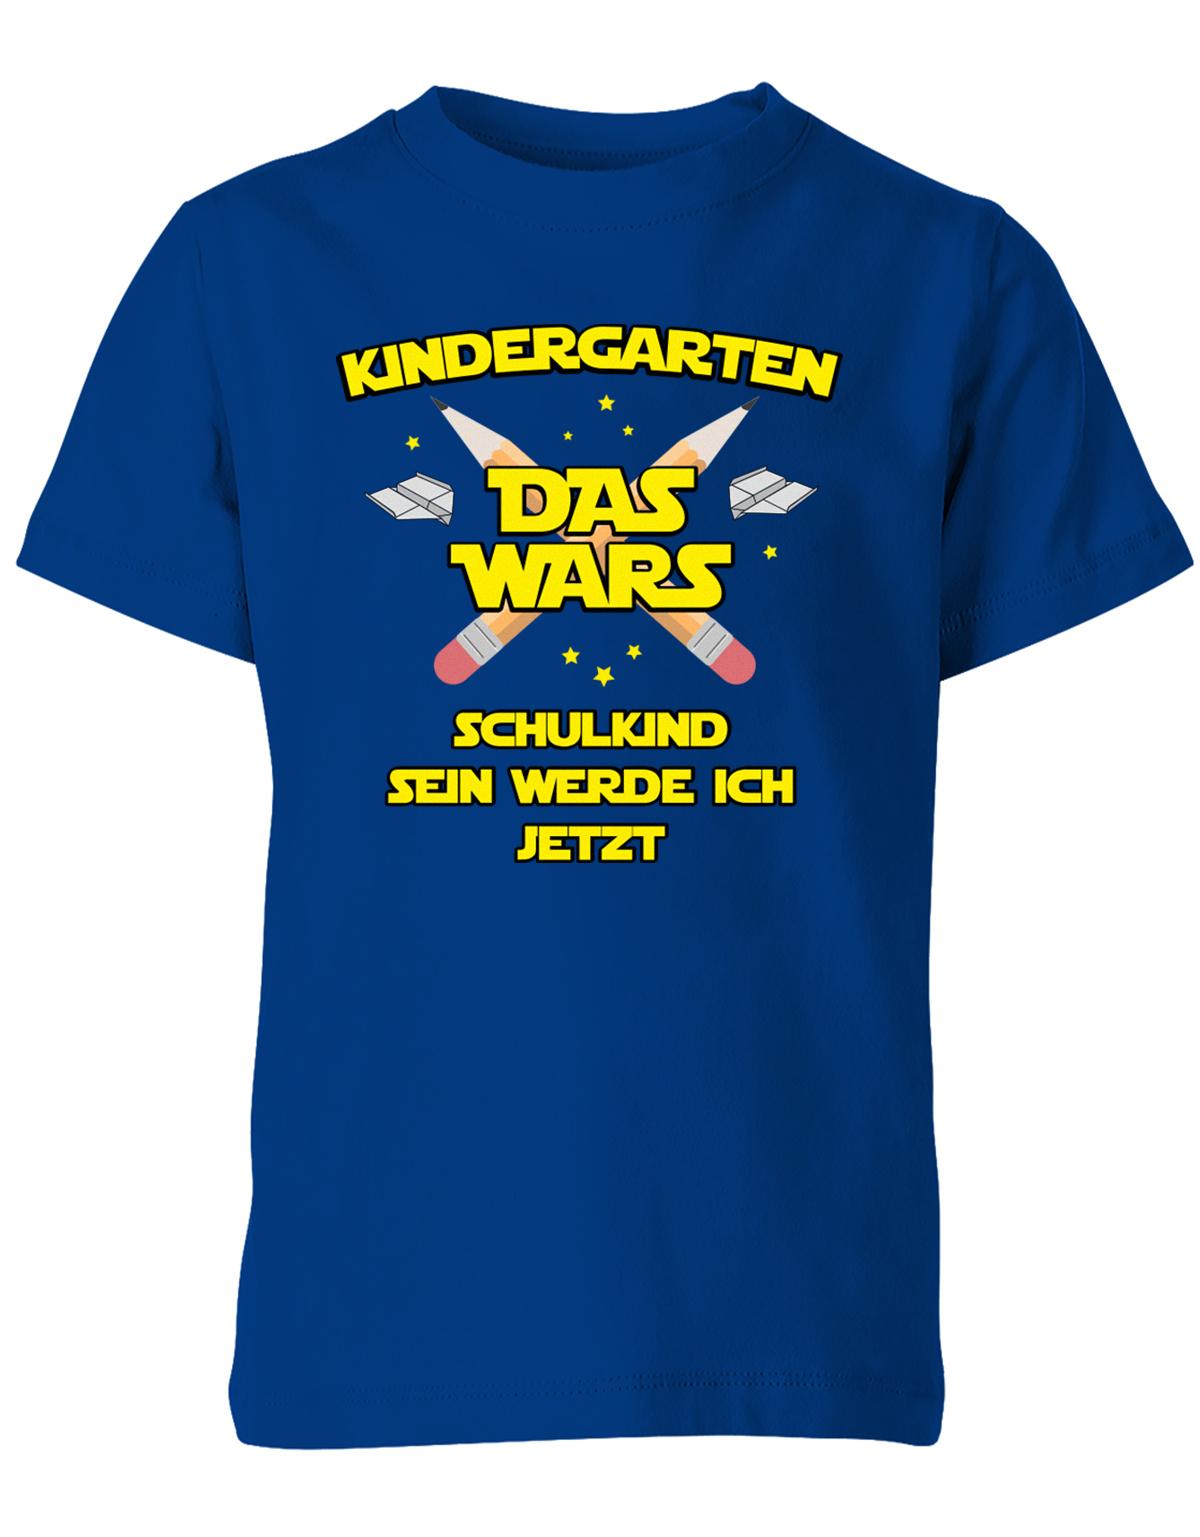 Kindergarten Das Wars Schulkind sein werde ich jetzt - Kita Abgänger Shirt Royalblau